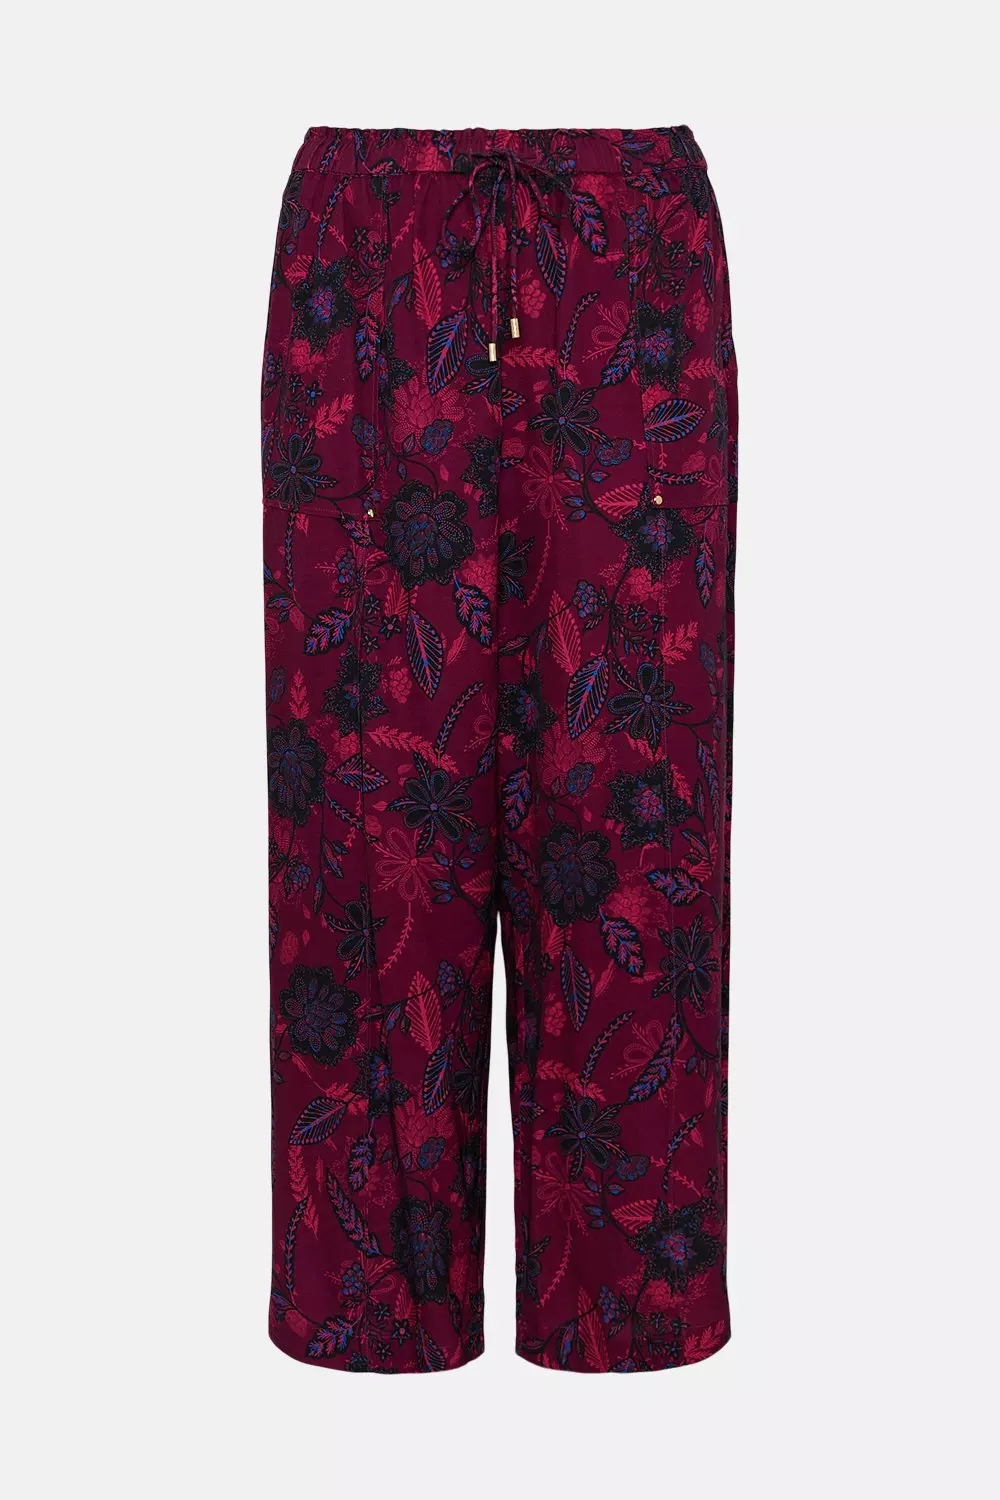 Plus Size Floral Batik Linen Woven Trouser | Karen Millen